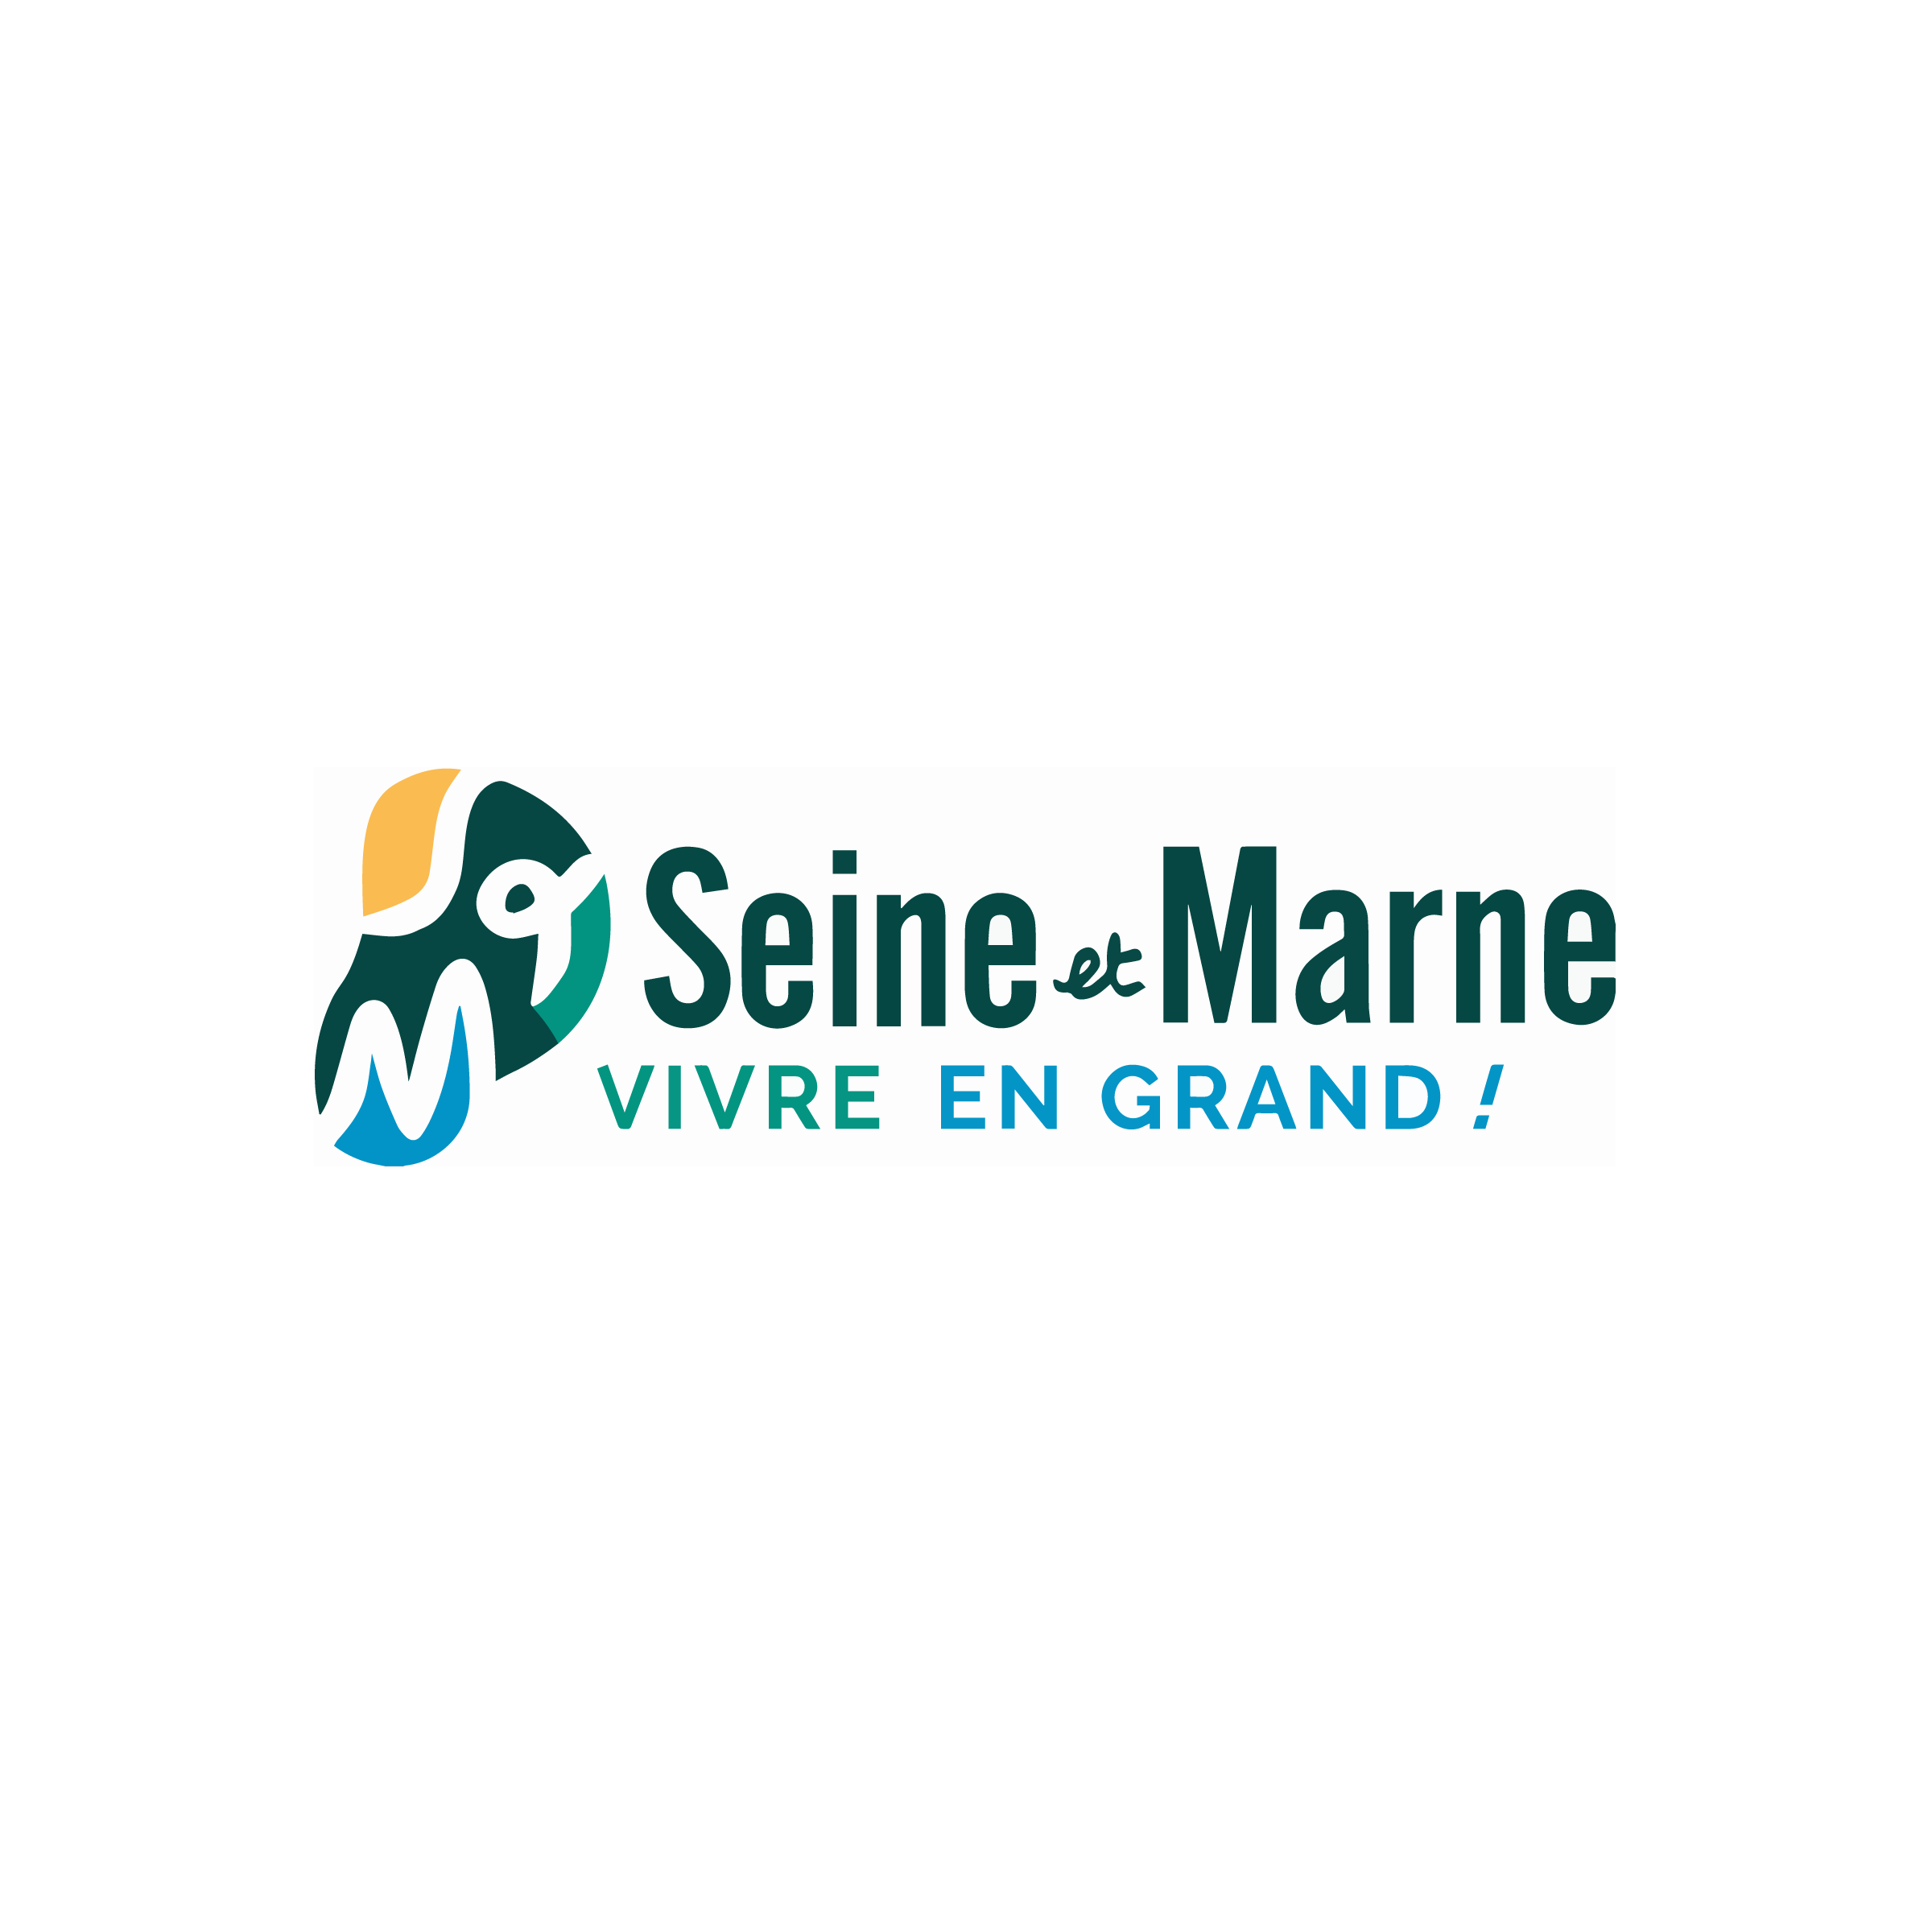 Logo Seine-et-Marne Attractivité